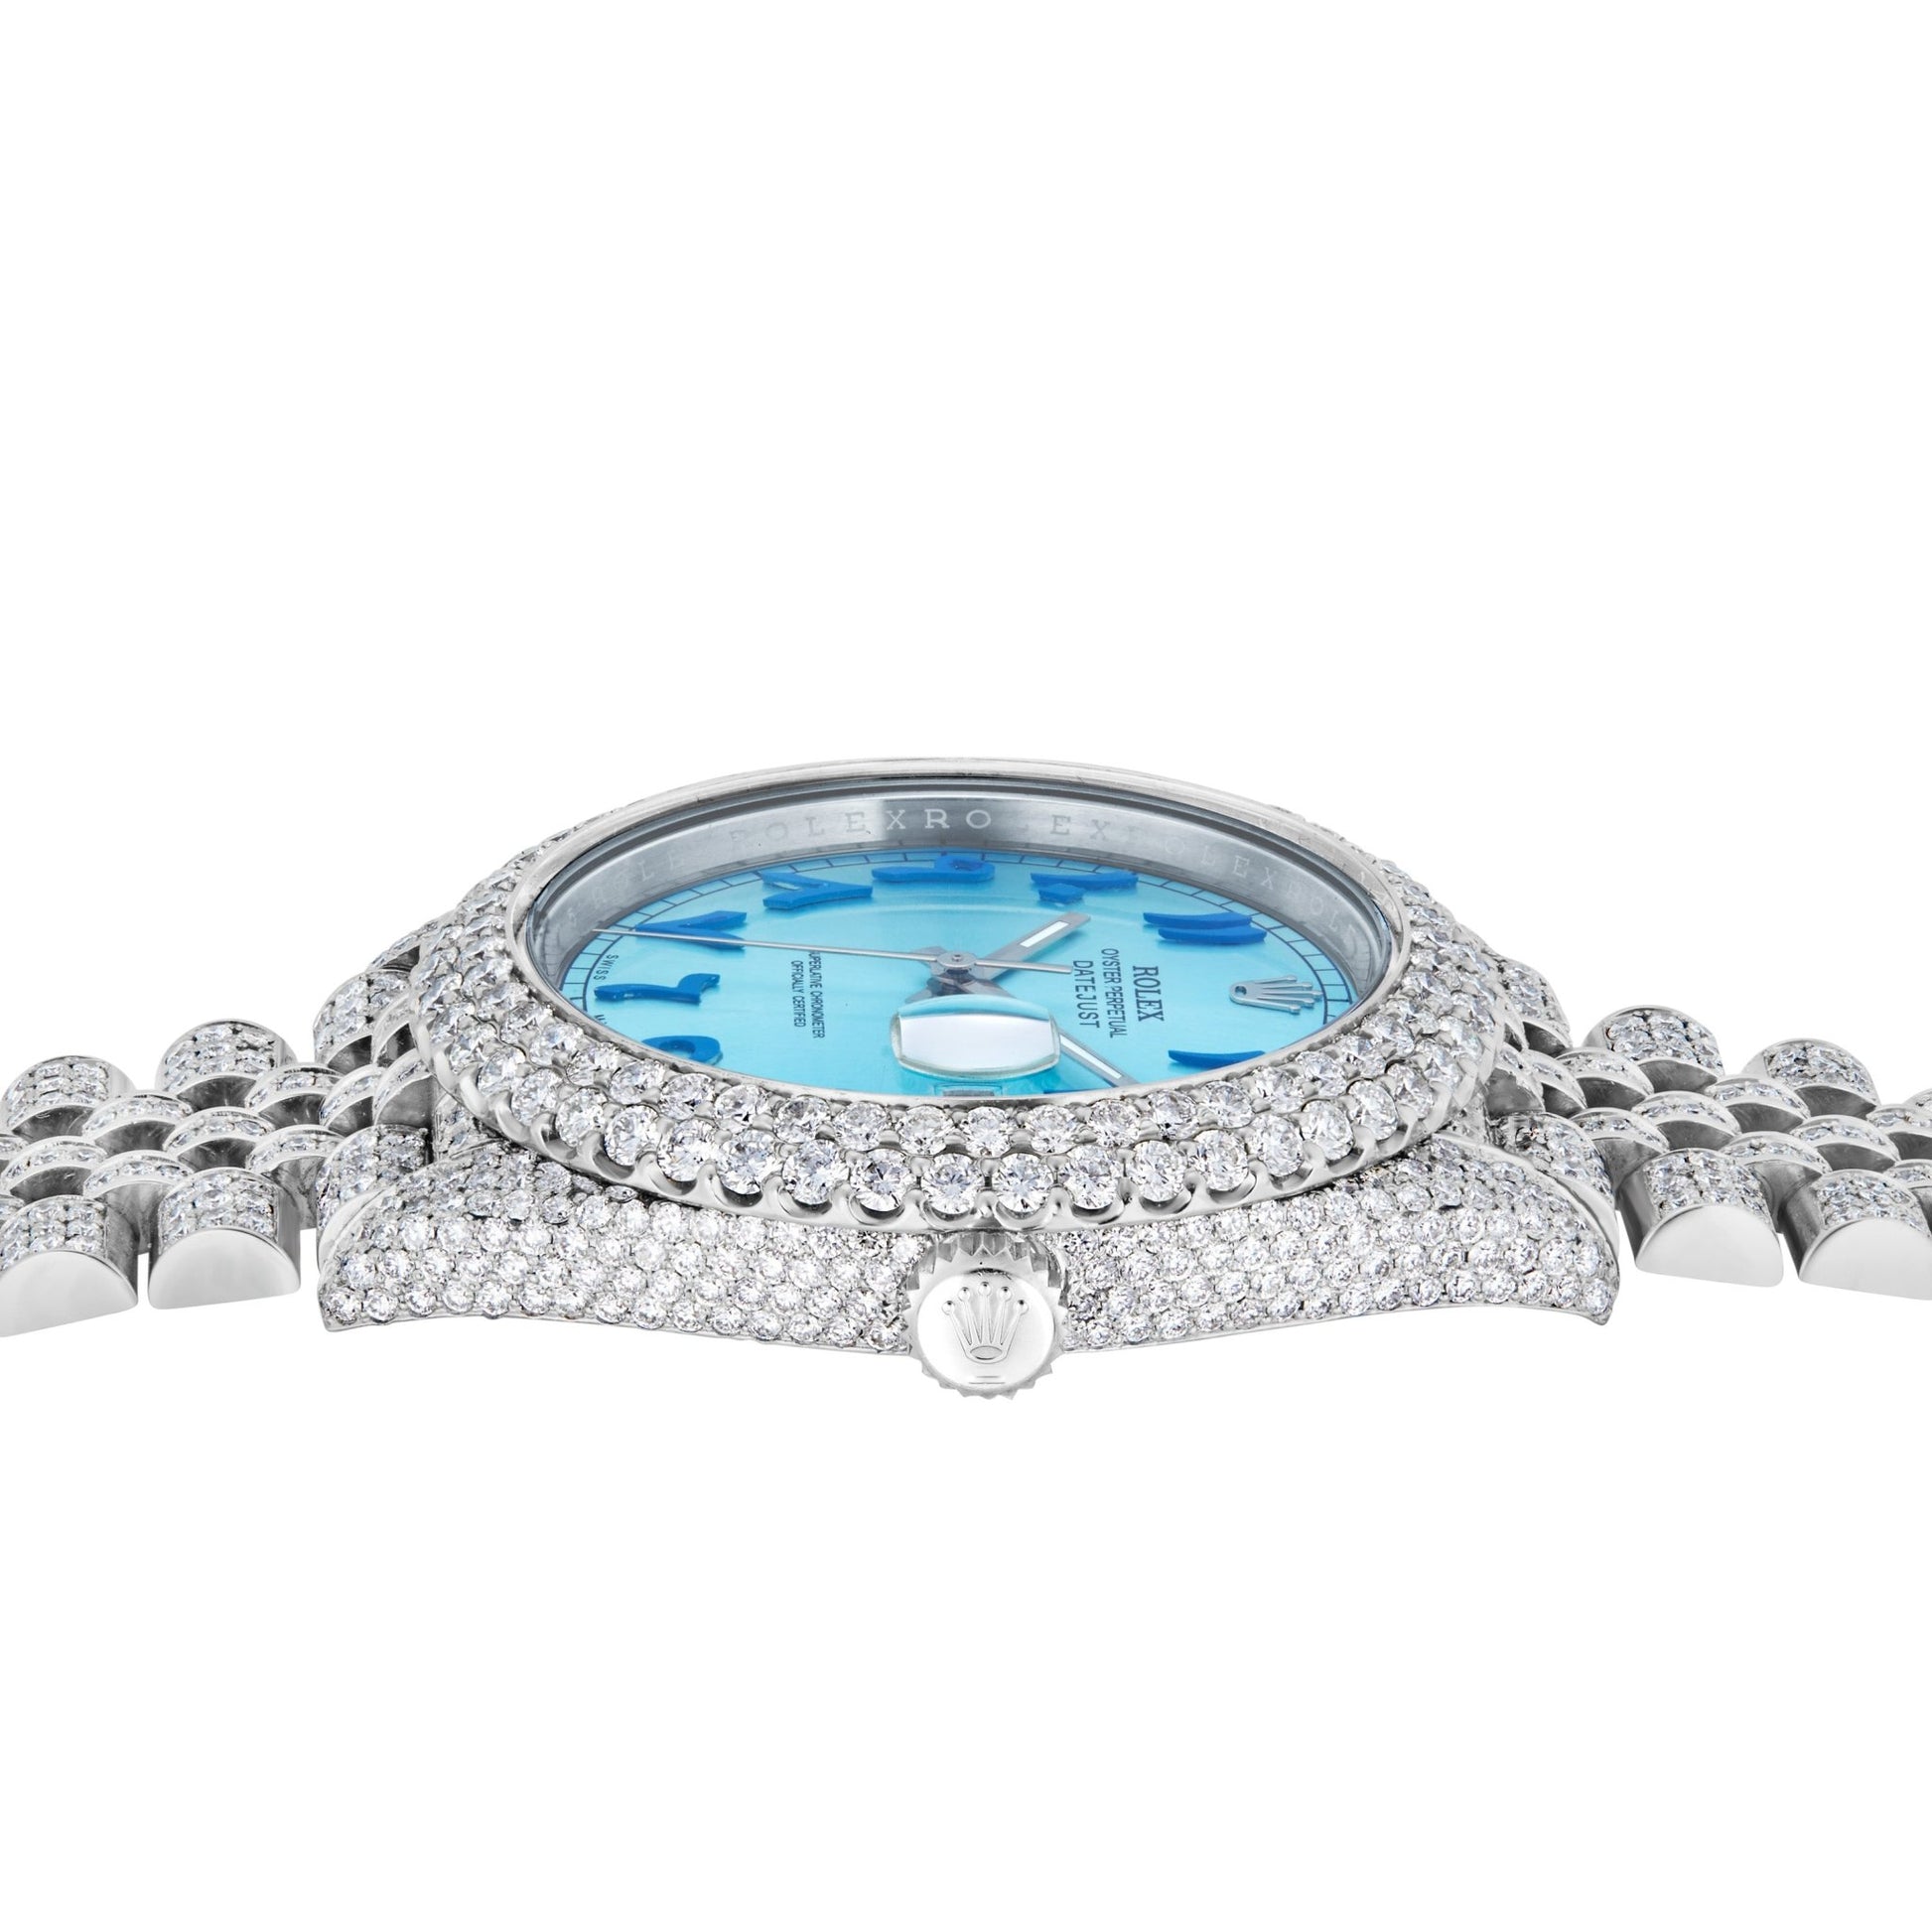 Rolex DateJust 41mm with Diamonds - Shyne Jewelers Rolex